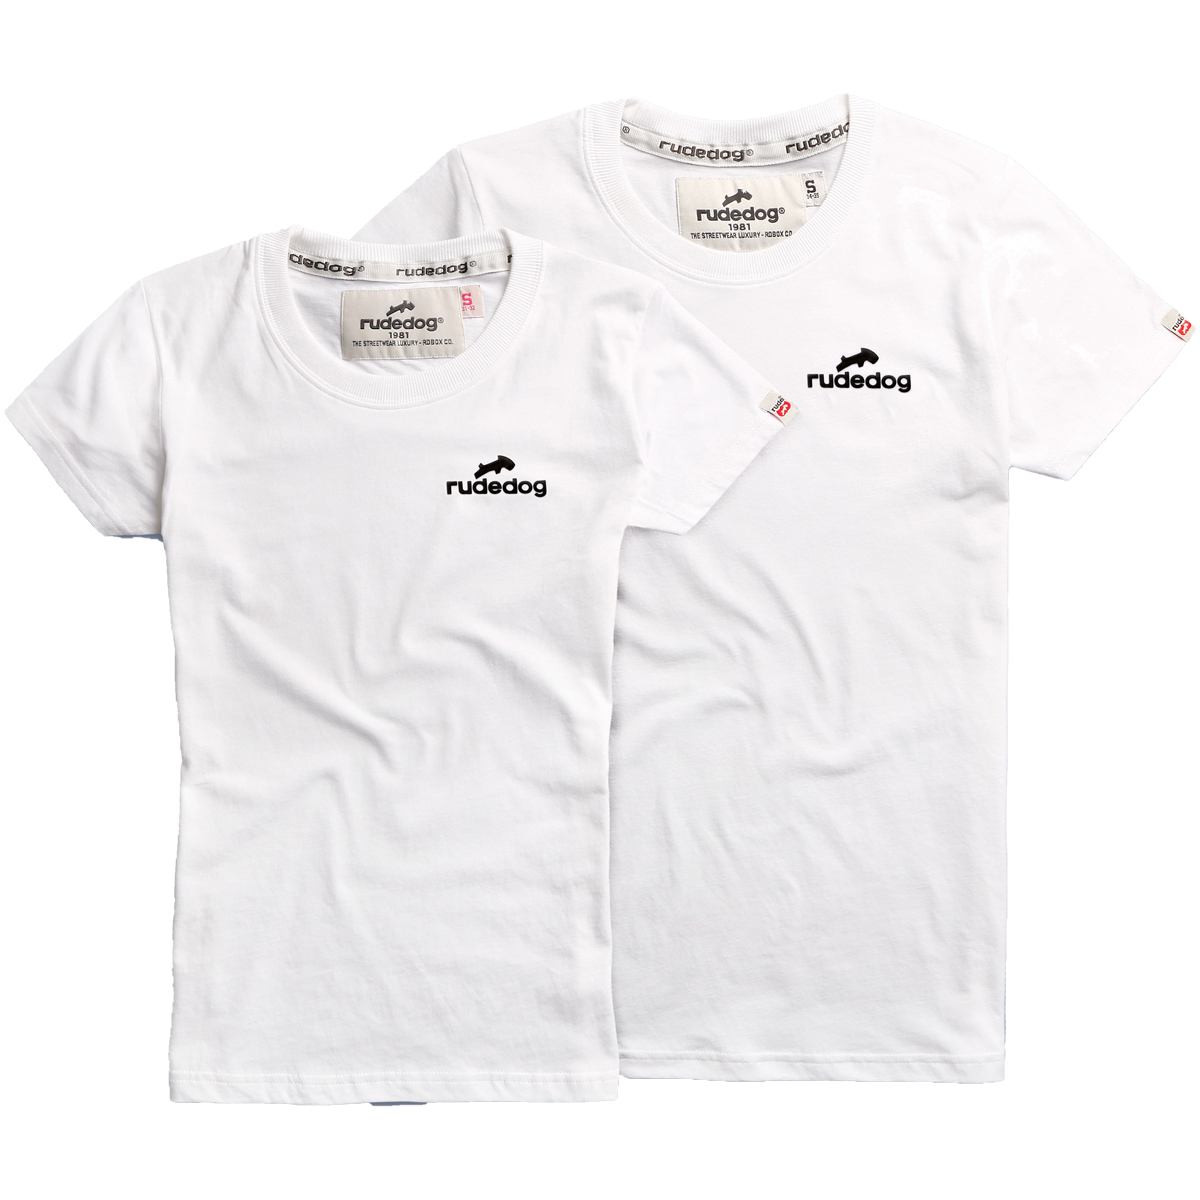 rudedog T-shirt เสื้อยืด รุ่น Basic (ผู้ชาย) แฟชั่น คอกลม ลายสกรีน ผ้าฝ้าย cotton ฟอกนุ่ม ไซส์ S M L XL